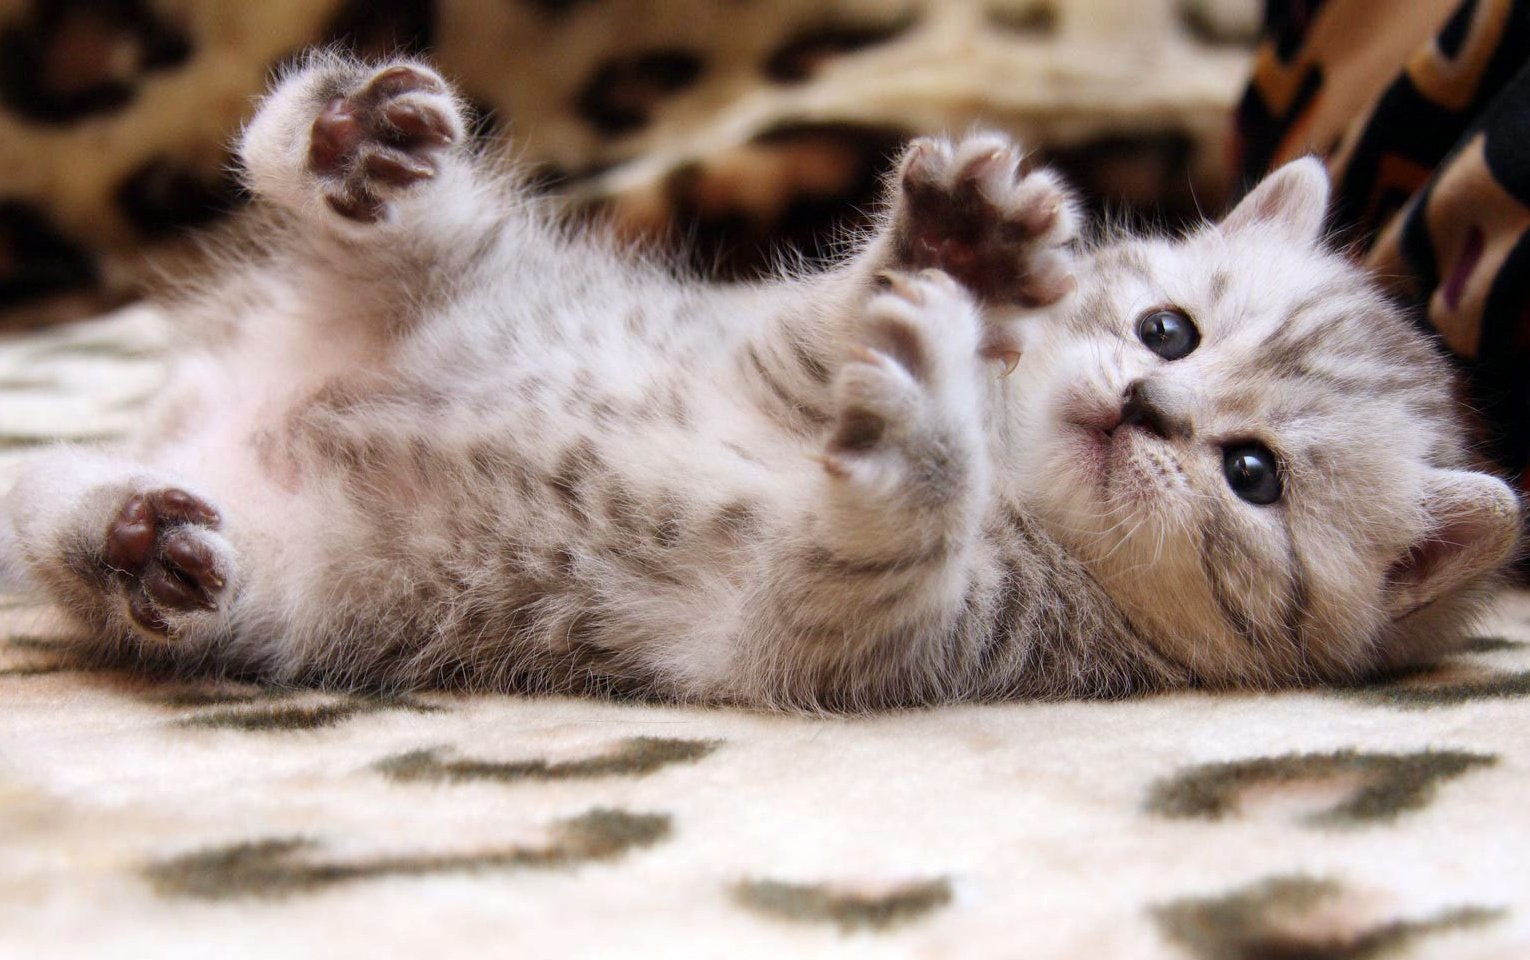 Hình ảnh mèo con cute dễ thương, đáng yêu nhất - META.vn